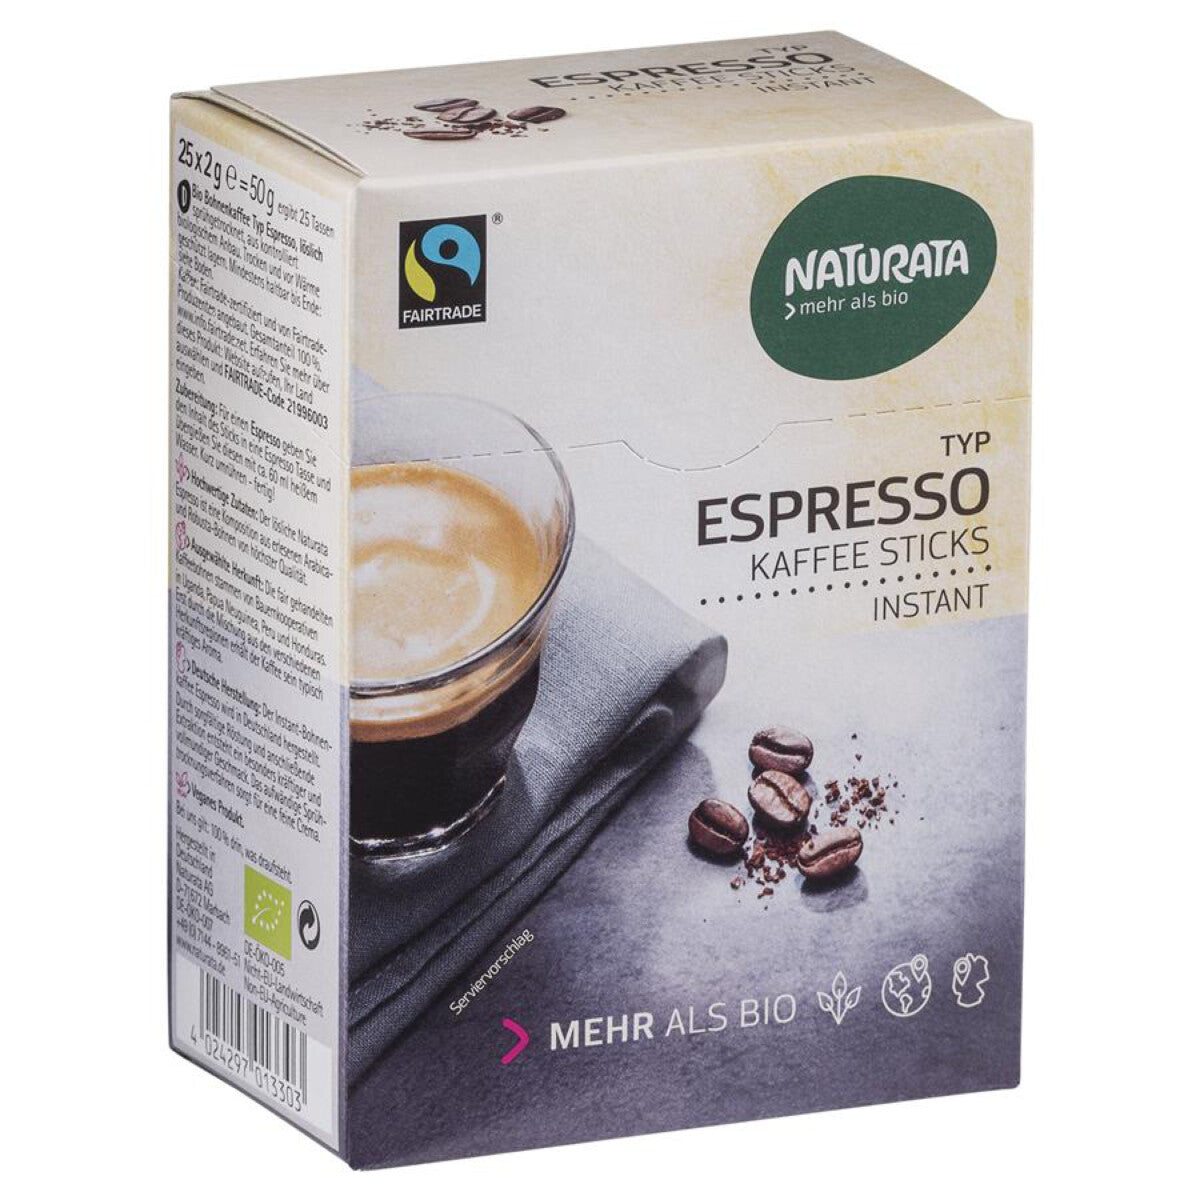 NATURATA Espresso Kaffee-Sticks instant - 50 g